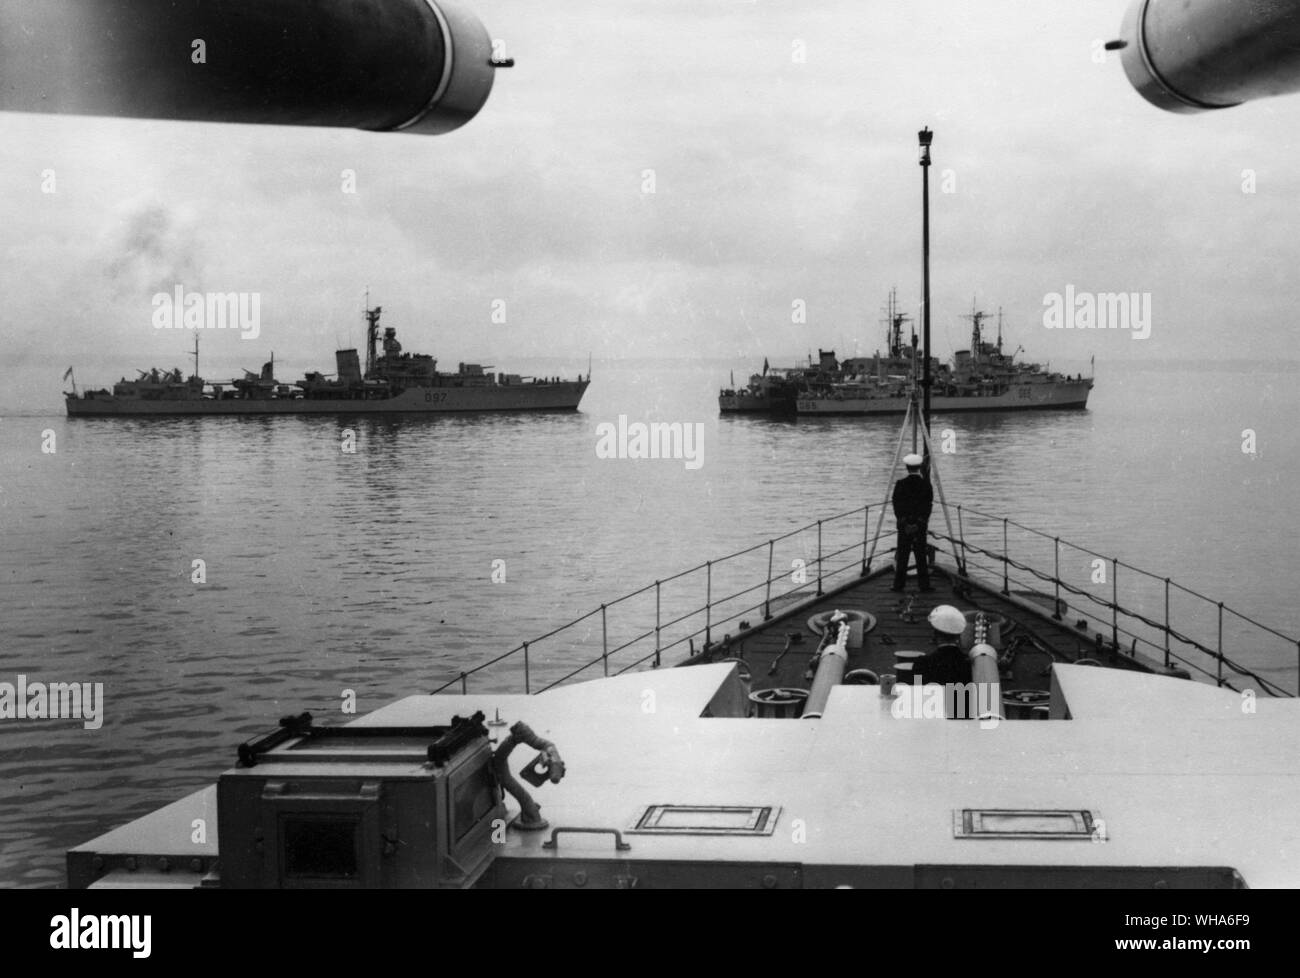 Von HMS Gabbard in Douarnanez Bay 1951. Zerstörer tanken nach der Teilnahme an NATO-Übungen. links rechts HMS HMS Corunna. Scorpion weit Seite. RFA Gold Ranger tanker Center. HMS St James recht nahe Seite Stockfoto